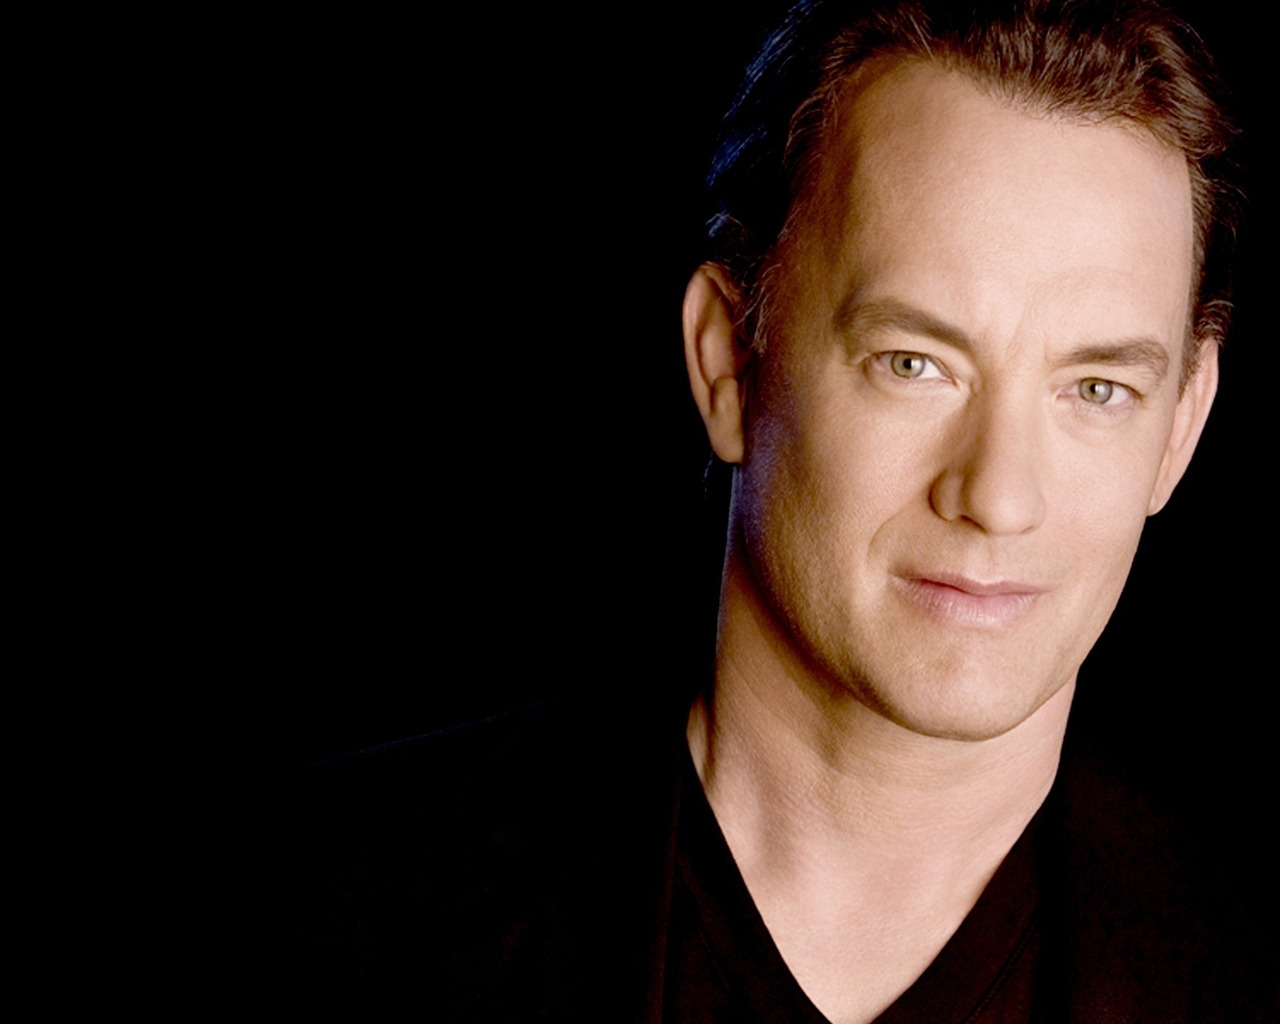 Tom Hanks for 1280 x 1024 resolution